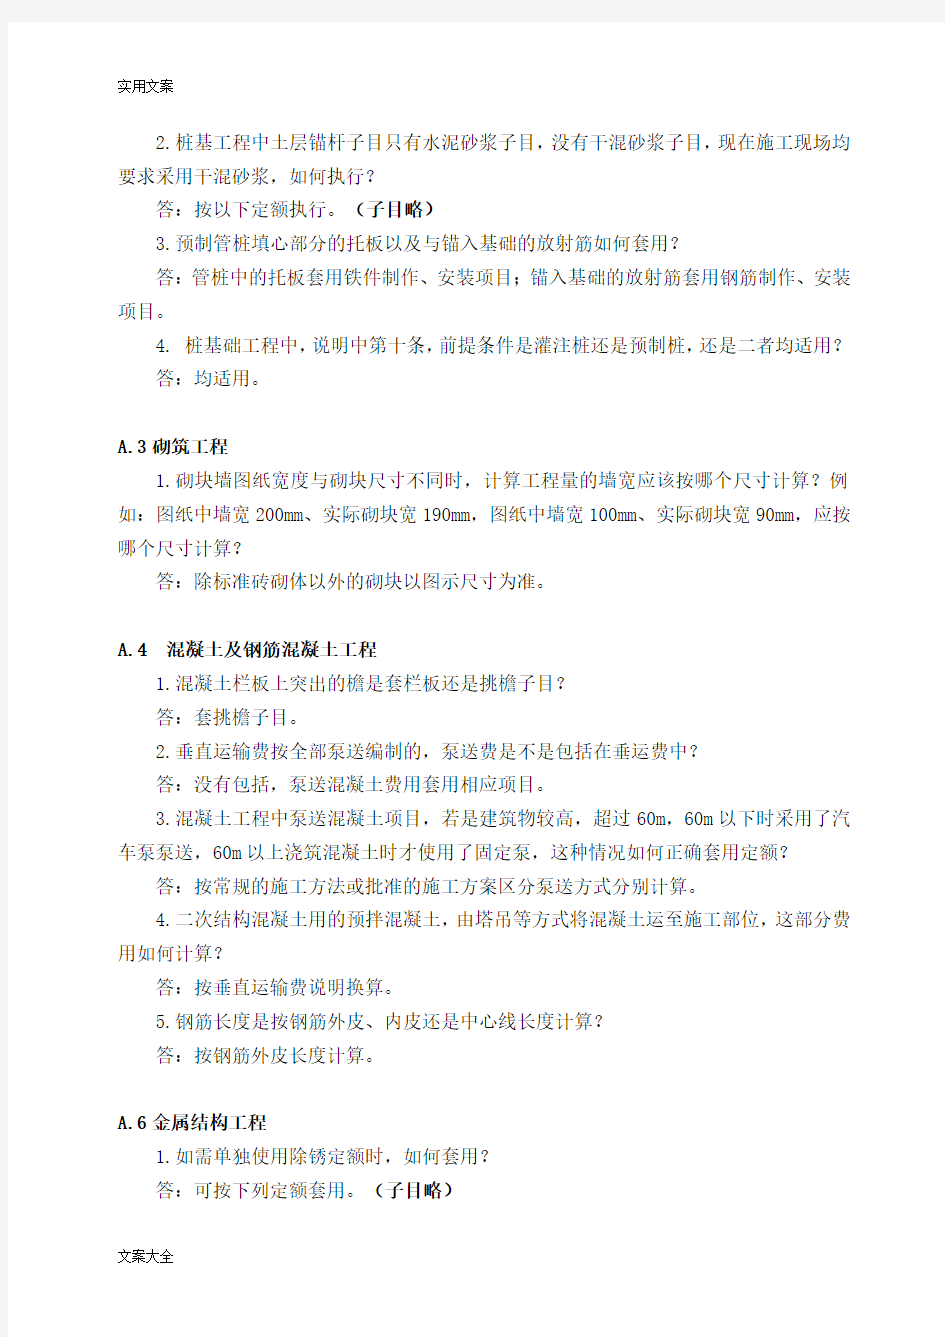 2012版河北省建筑工程计价依据解释总汇编(1-7)